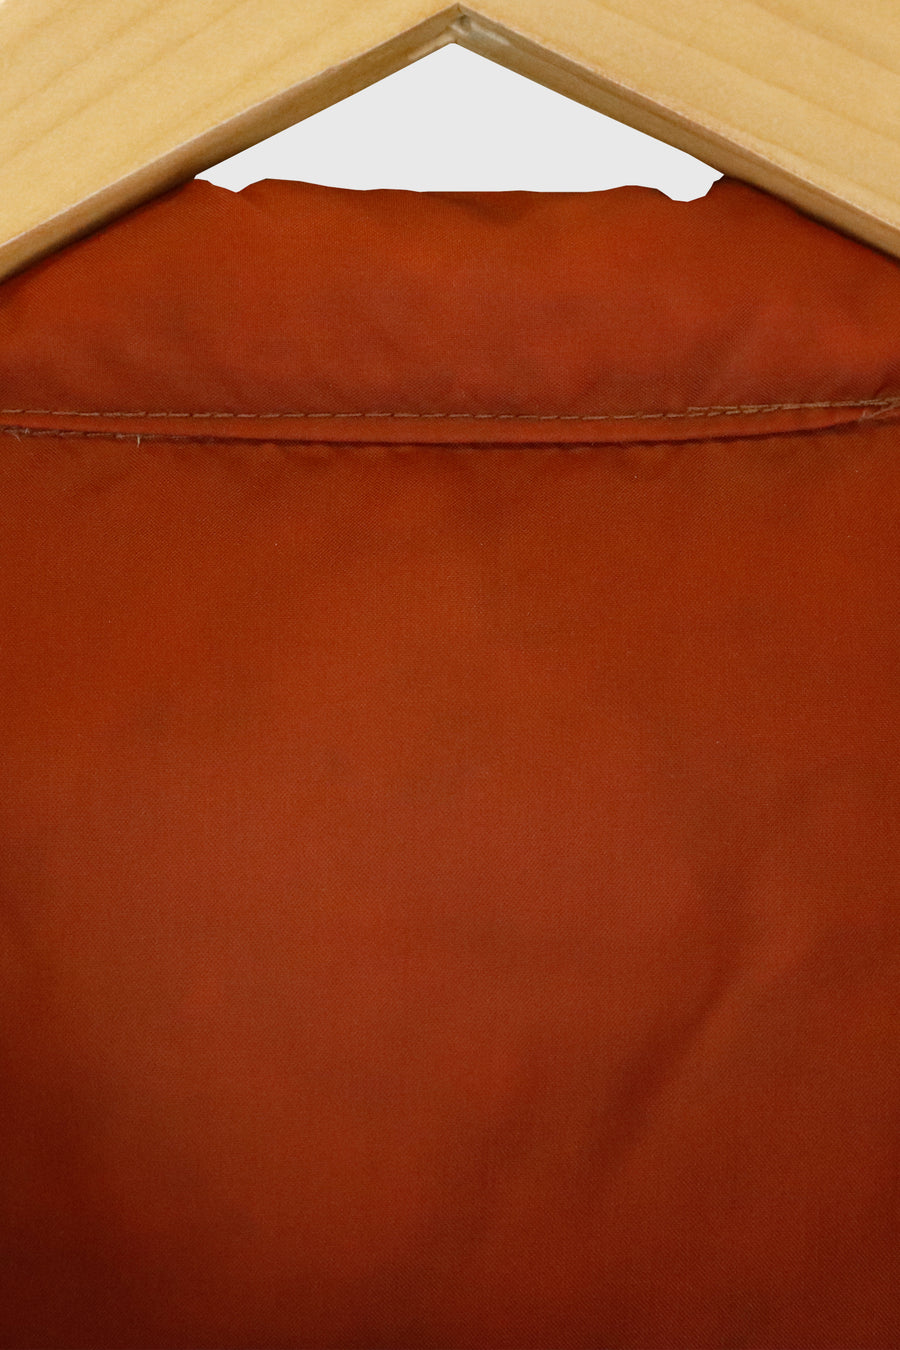 Vintage Reversable Vest With Pockets Sz 2XL